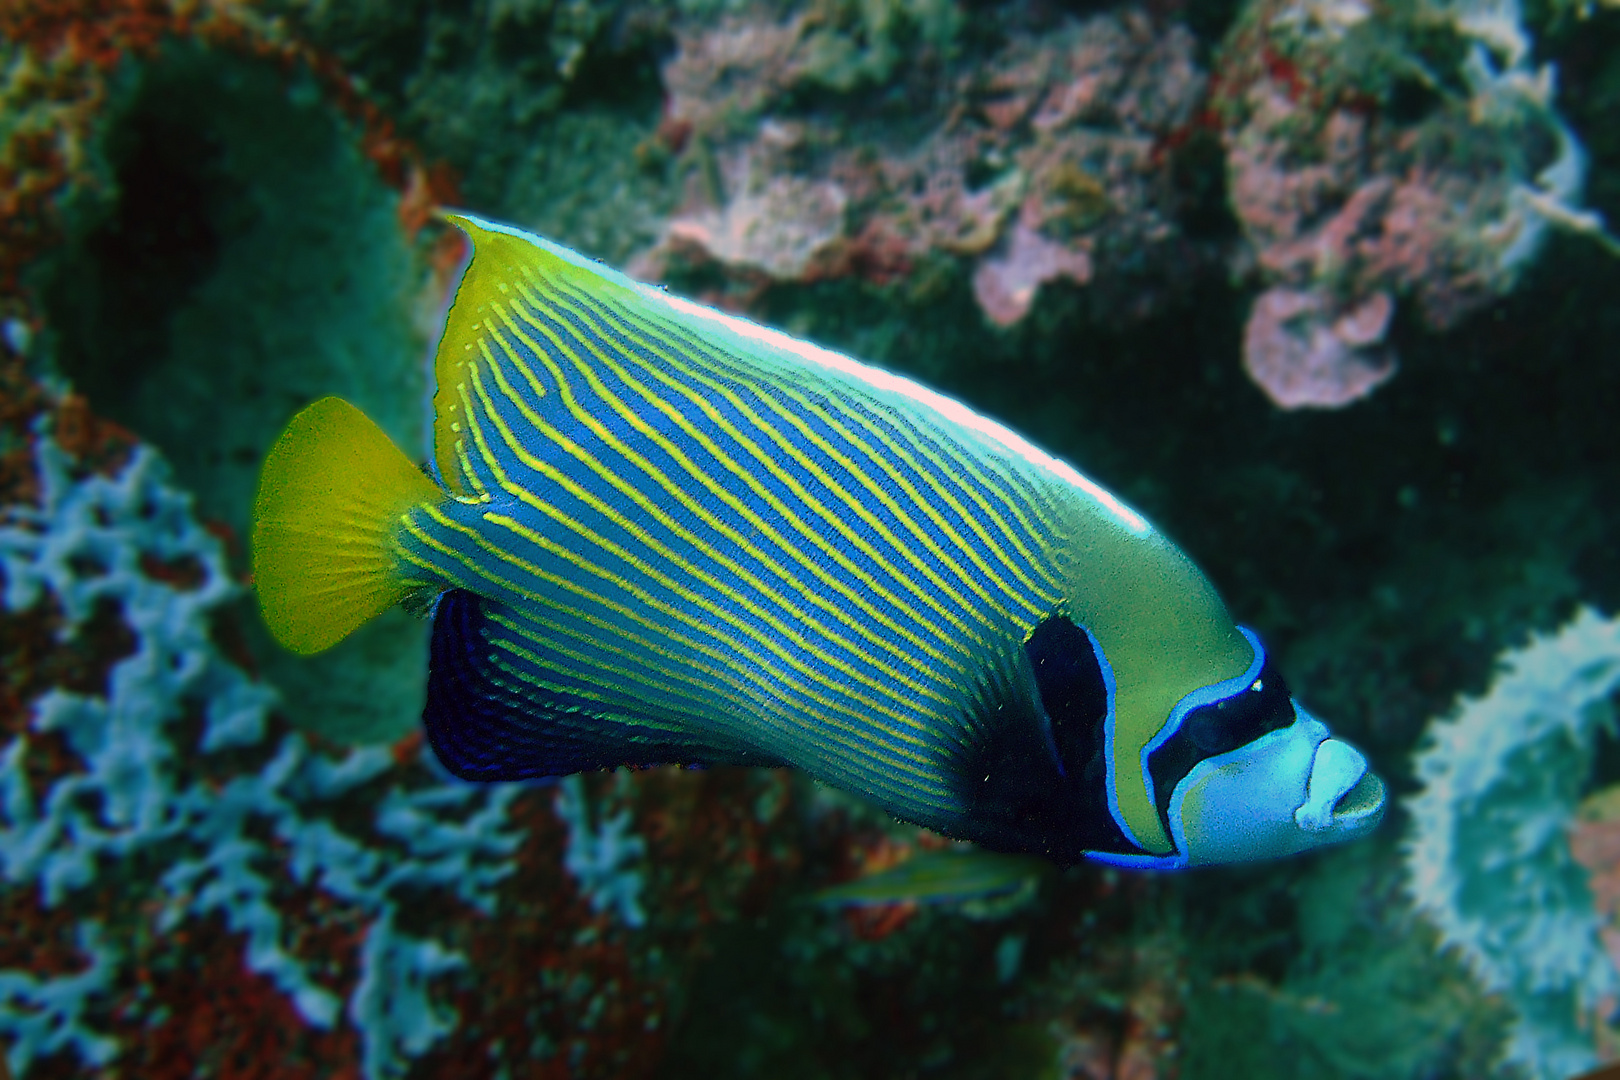 Picturesque lined emperor angelfish